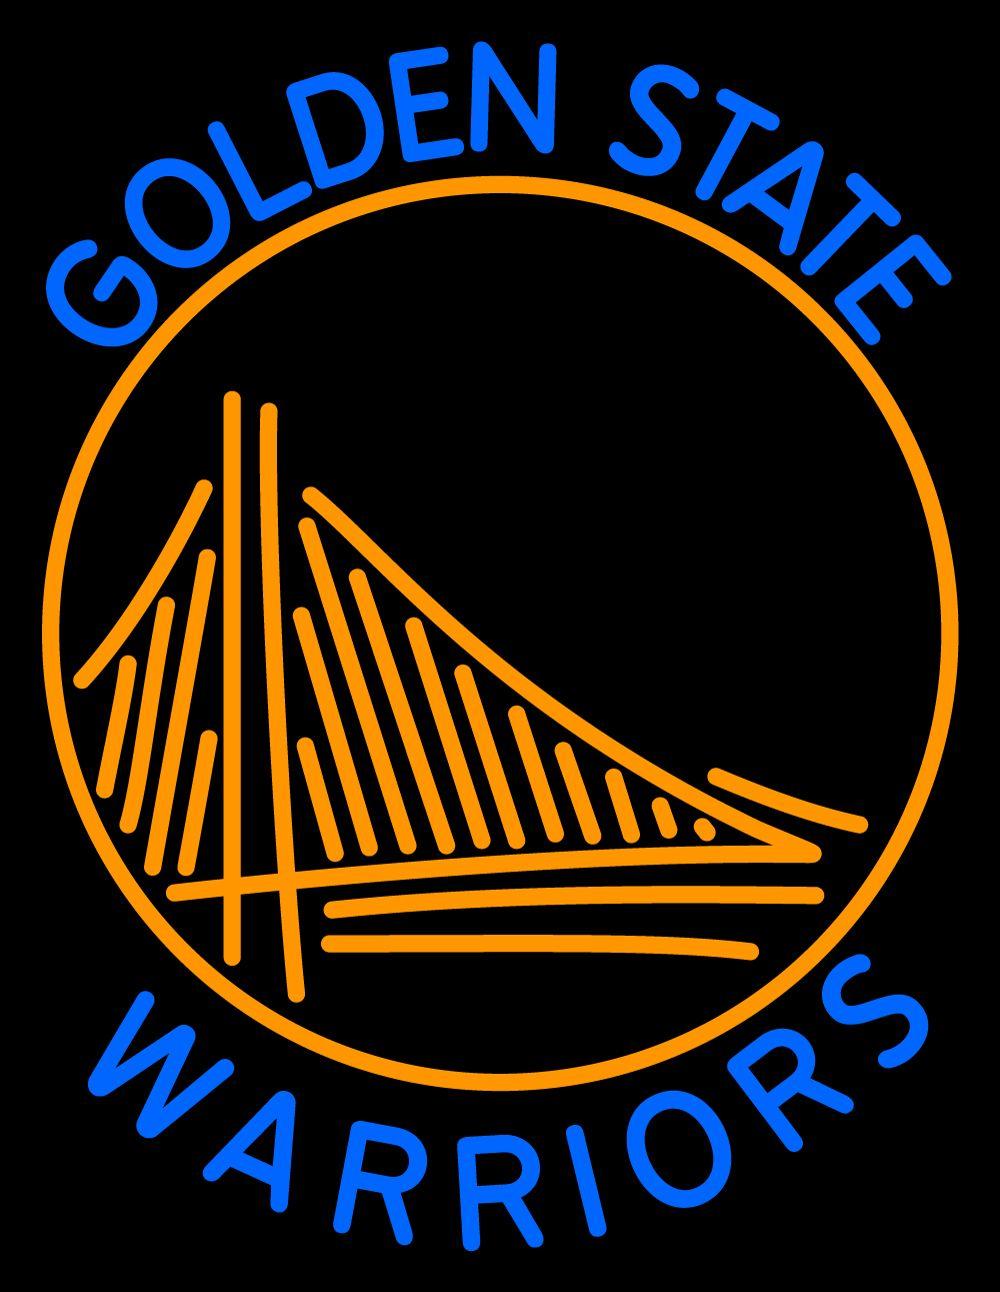 Golden State Warriors Logo Wallpaper 2016